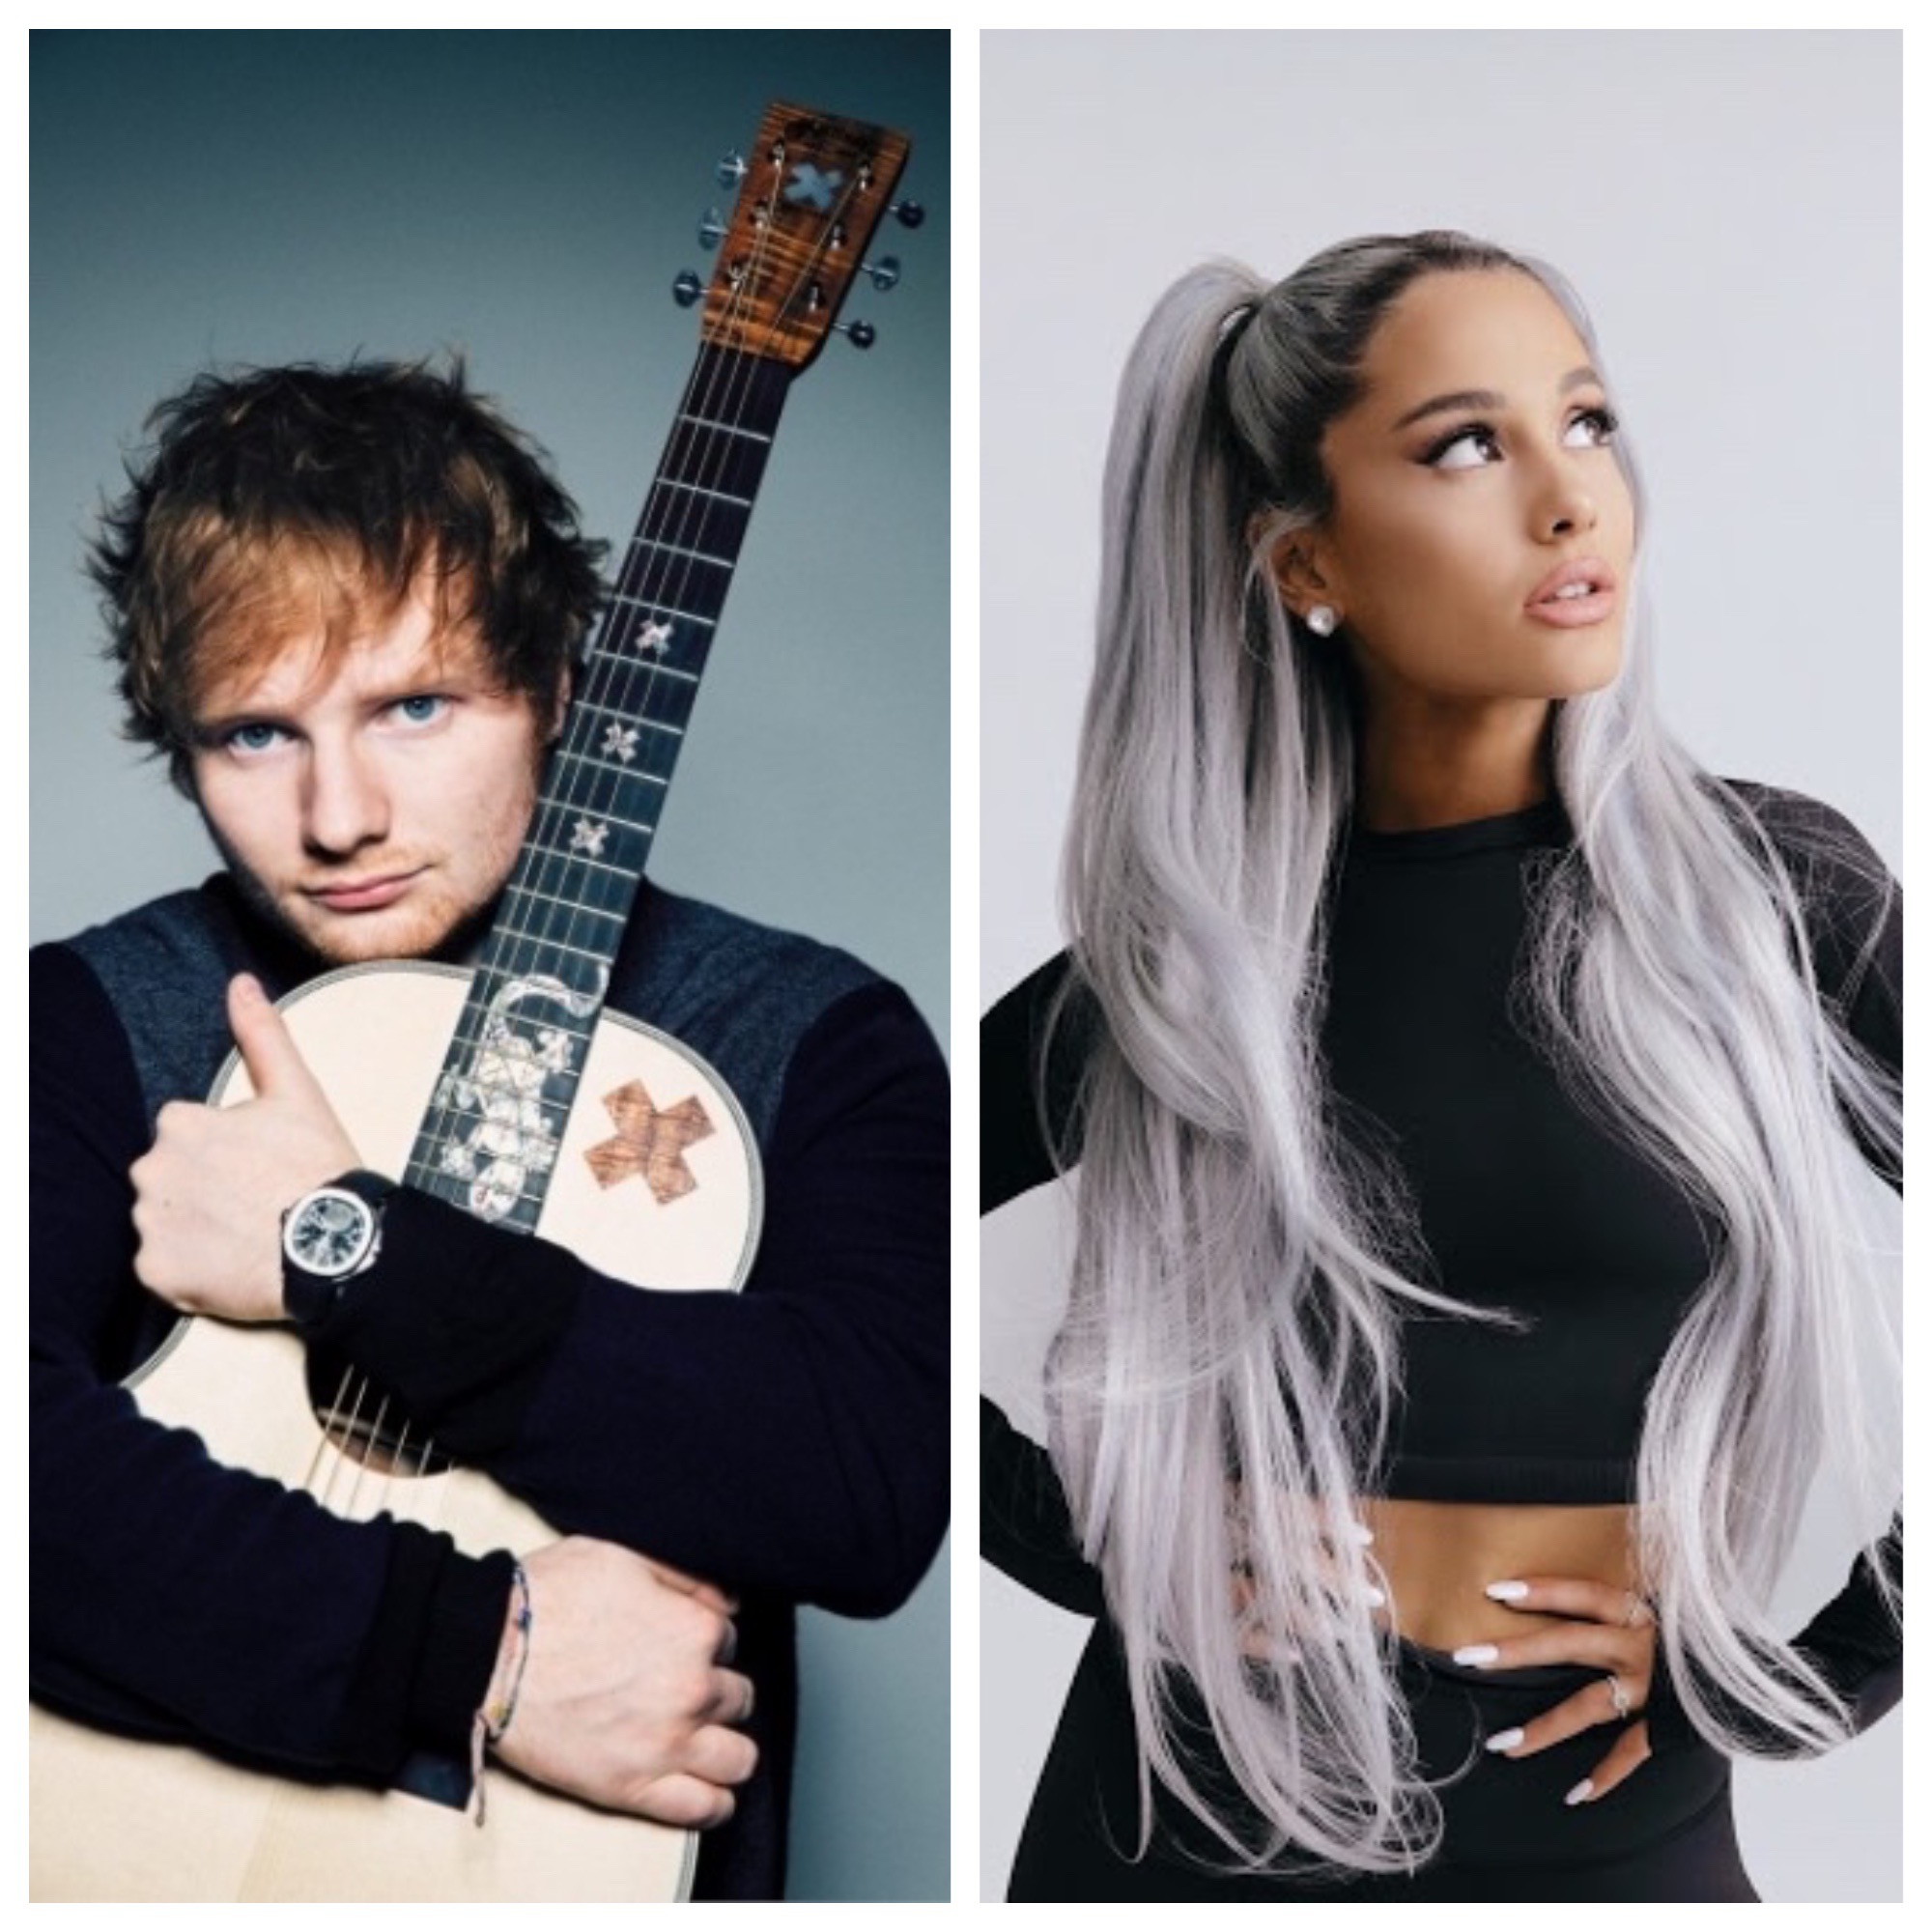 Piesele lui Ed Sheeran și ale Arianei Grande, interzise în Indonezia. Uite de ce!